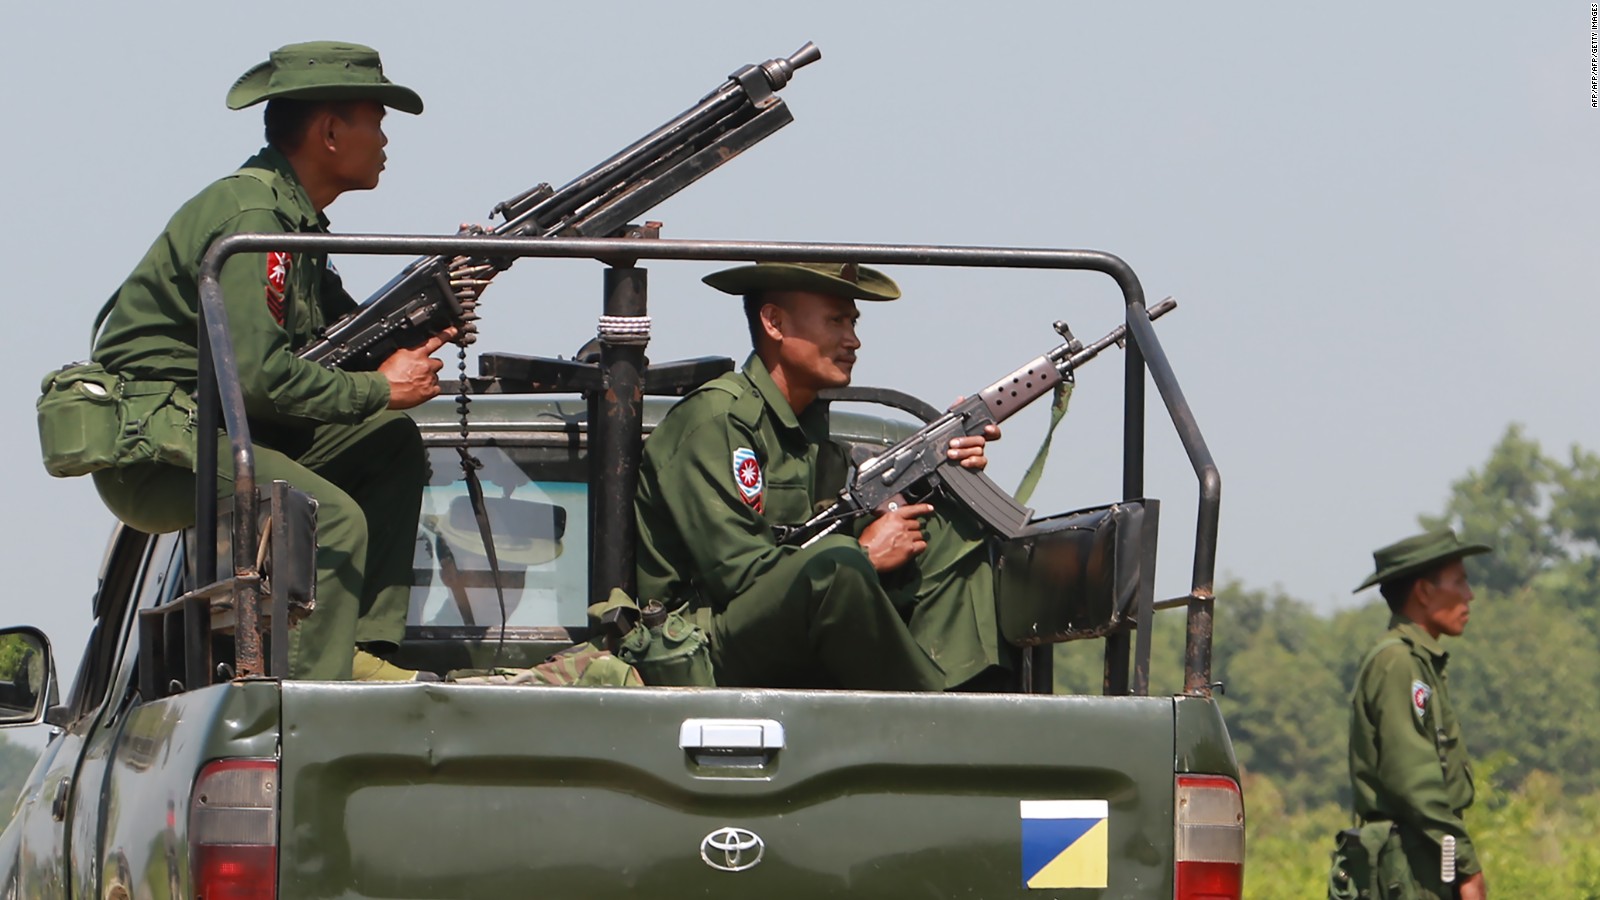 缅甸20余处警方路障遭武装分子袭击 致人员伤亡 - 2017年8月25日, 俄罗斯卫星通讯社